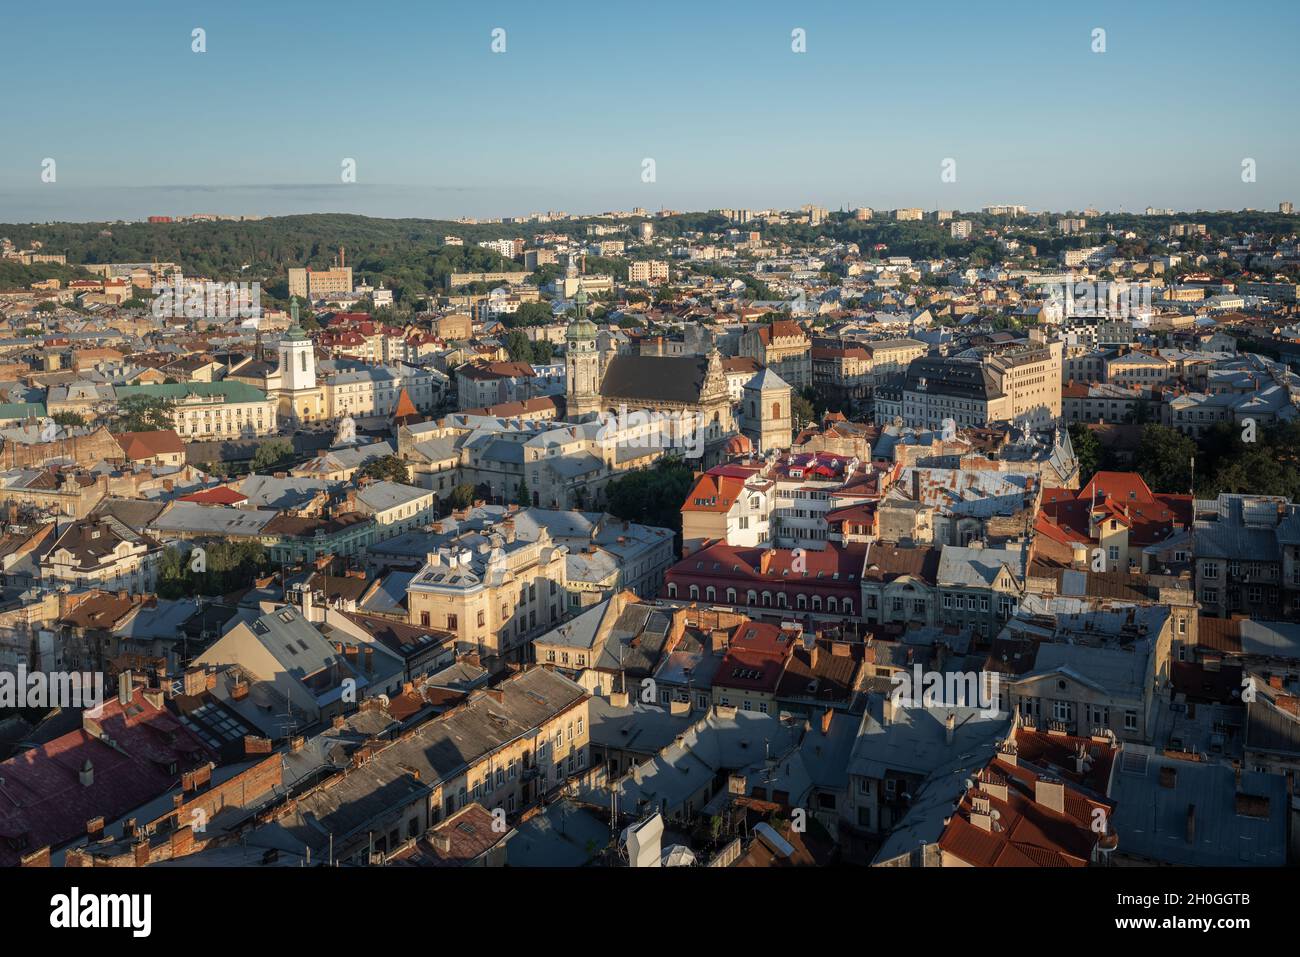 Vue aérienne de Lviv avec l'église et le monastère Bernardins - Lviv, Ukraine Banque D'Images